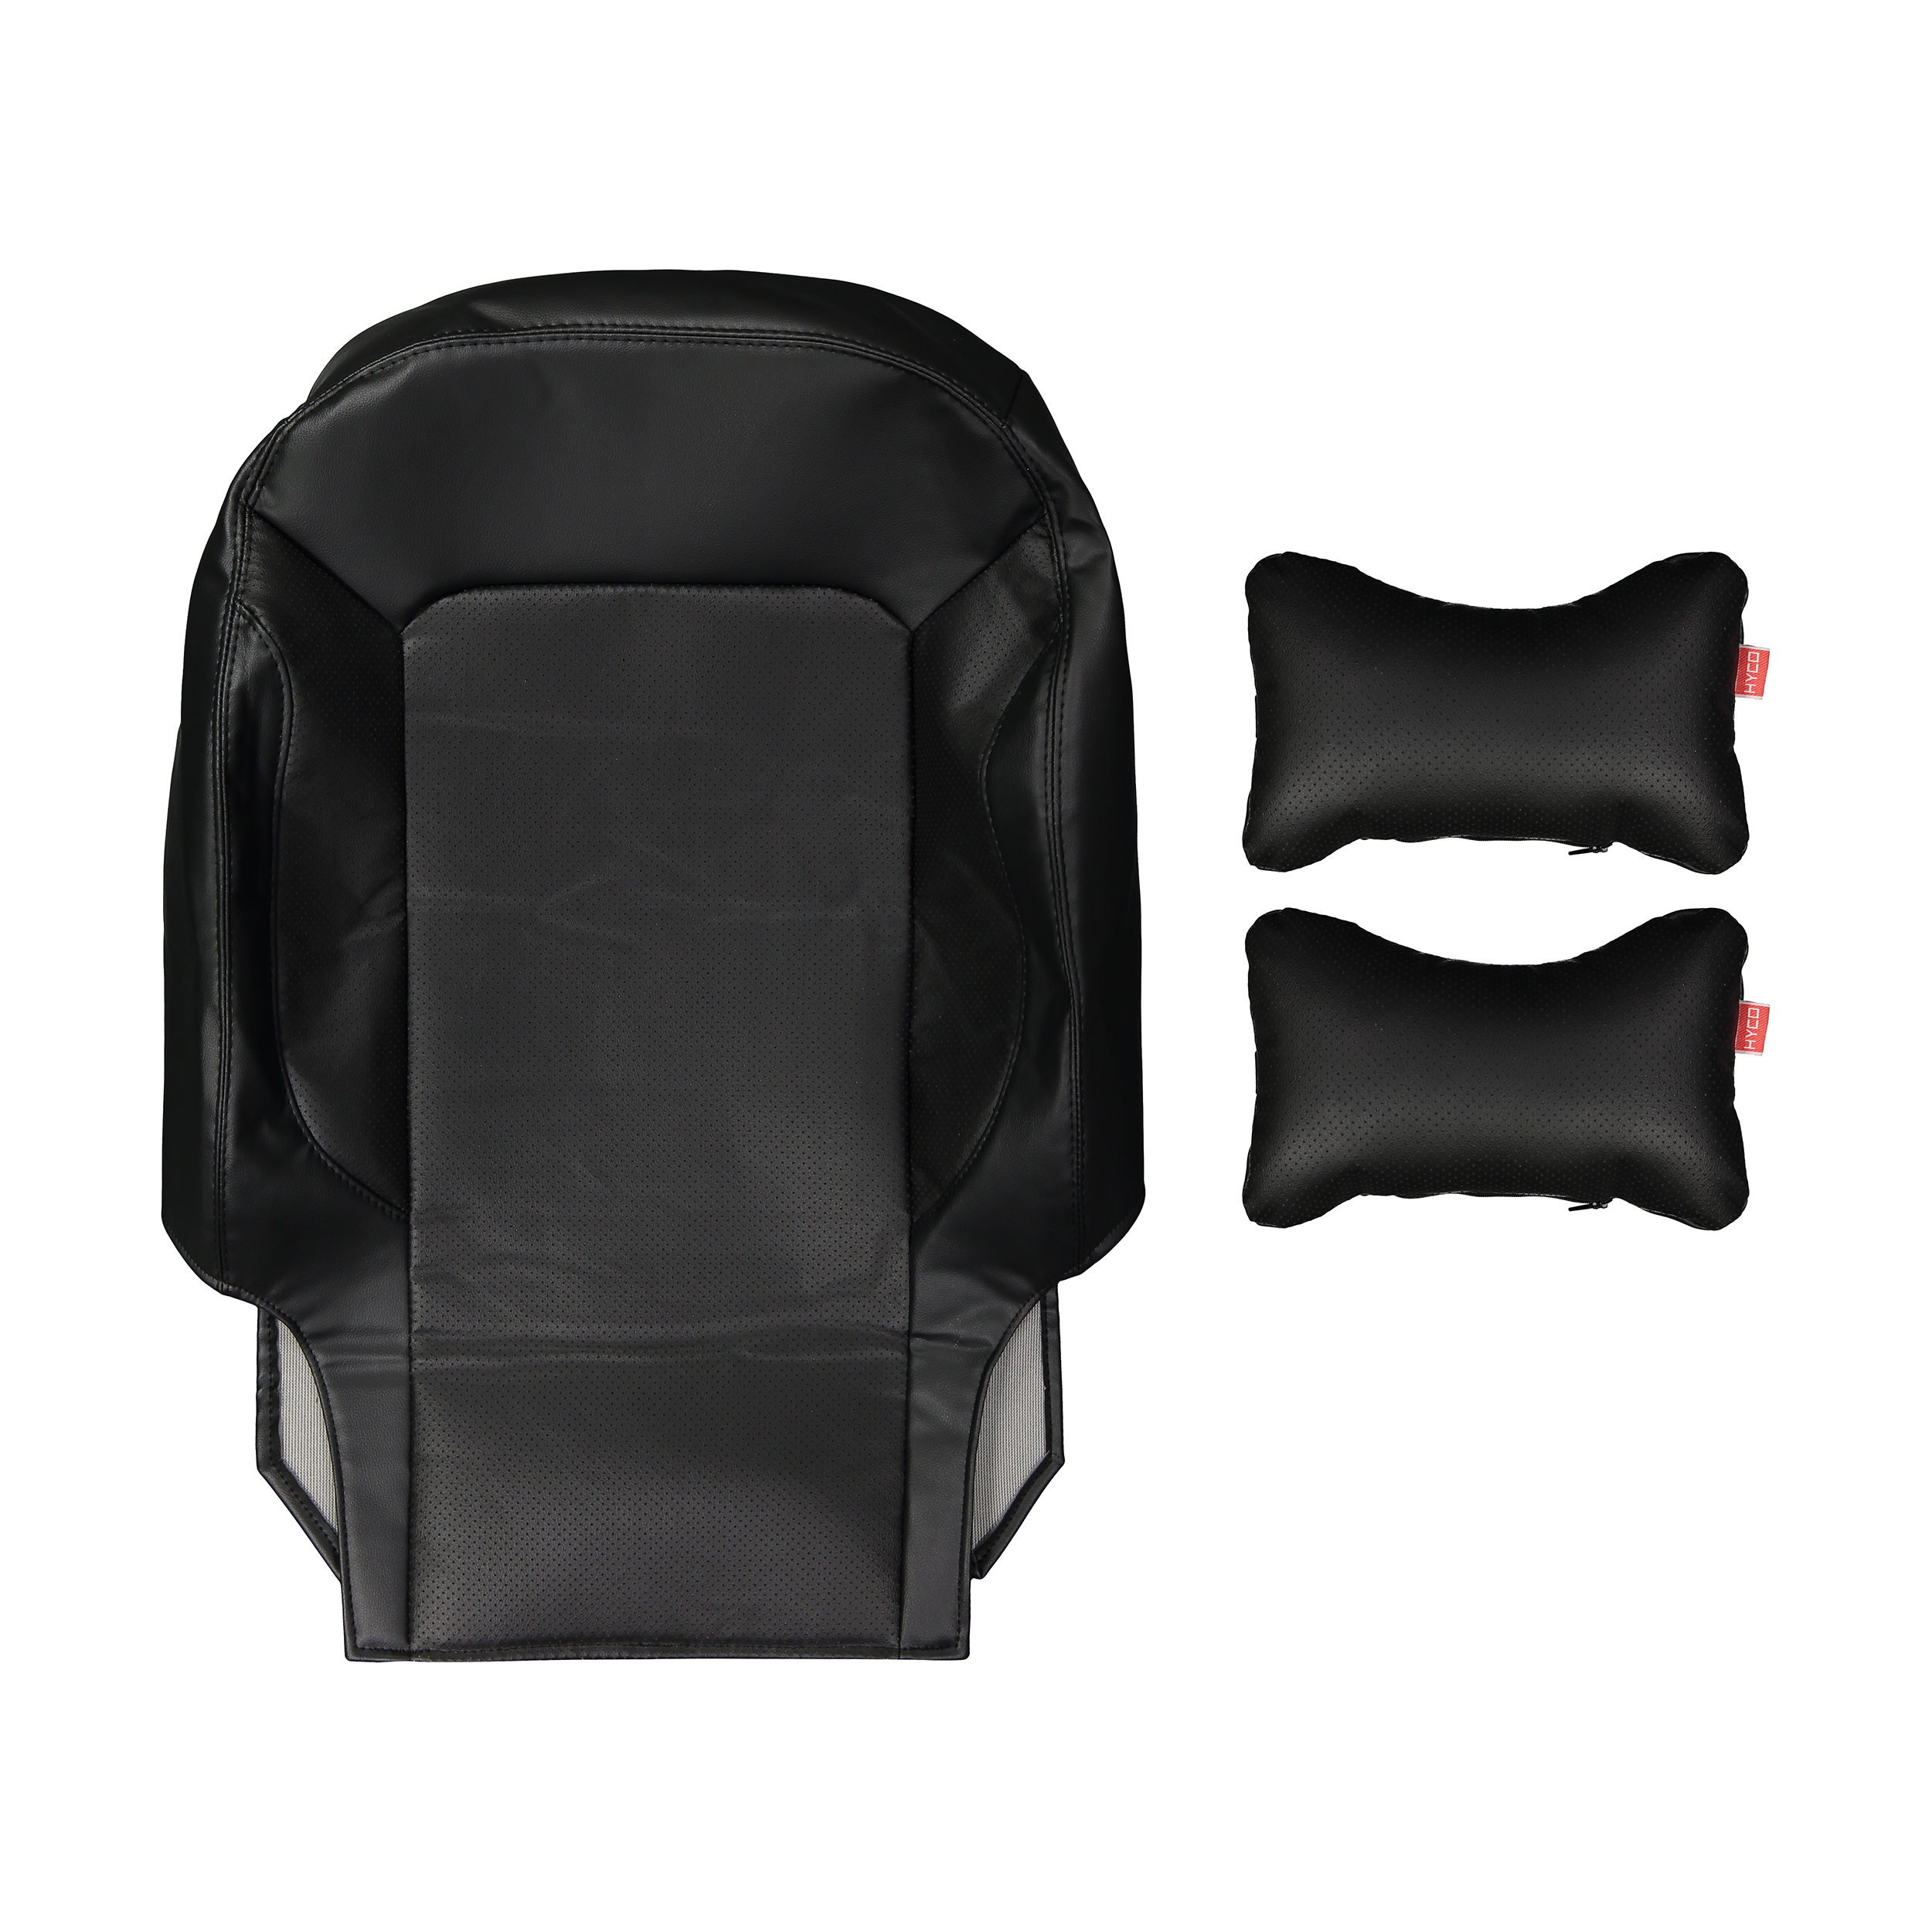 نکته خرید - قیمت روز روکش صندلی خودرو هایکو مدل آذین مناسب برای شاهین به همراه پشت گردنی خرید